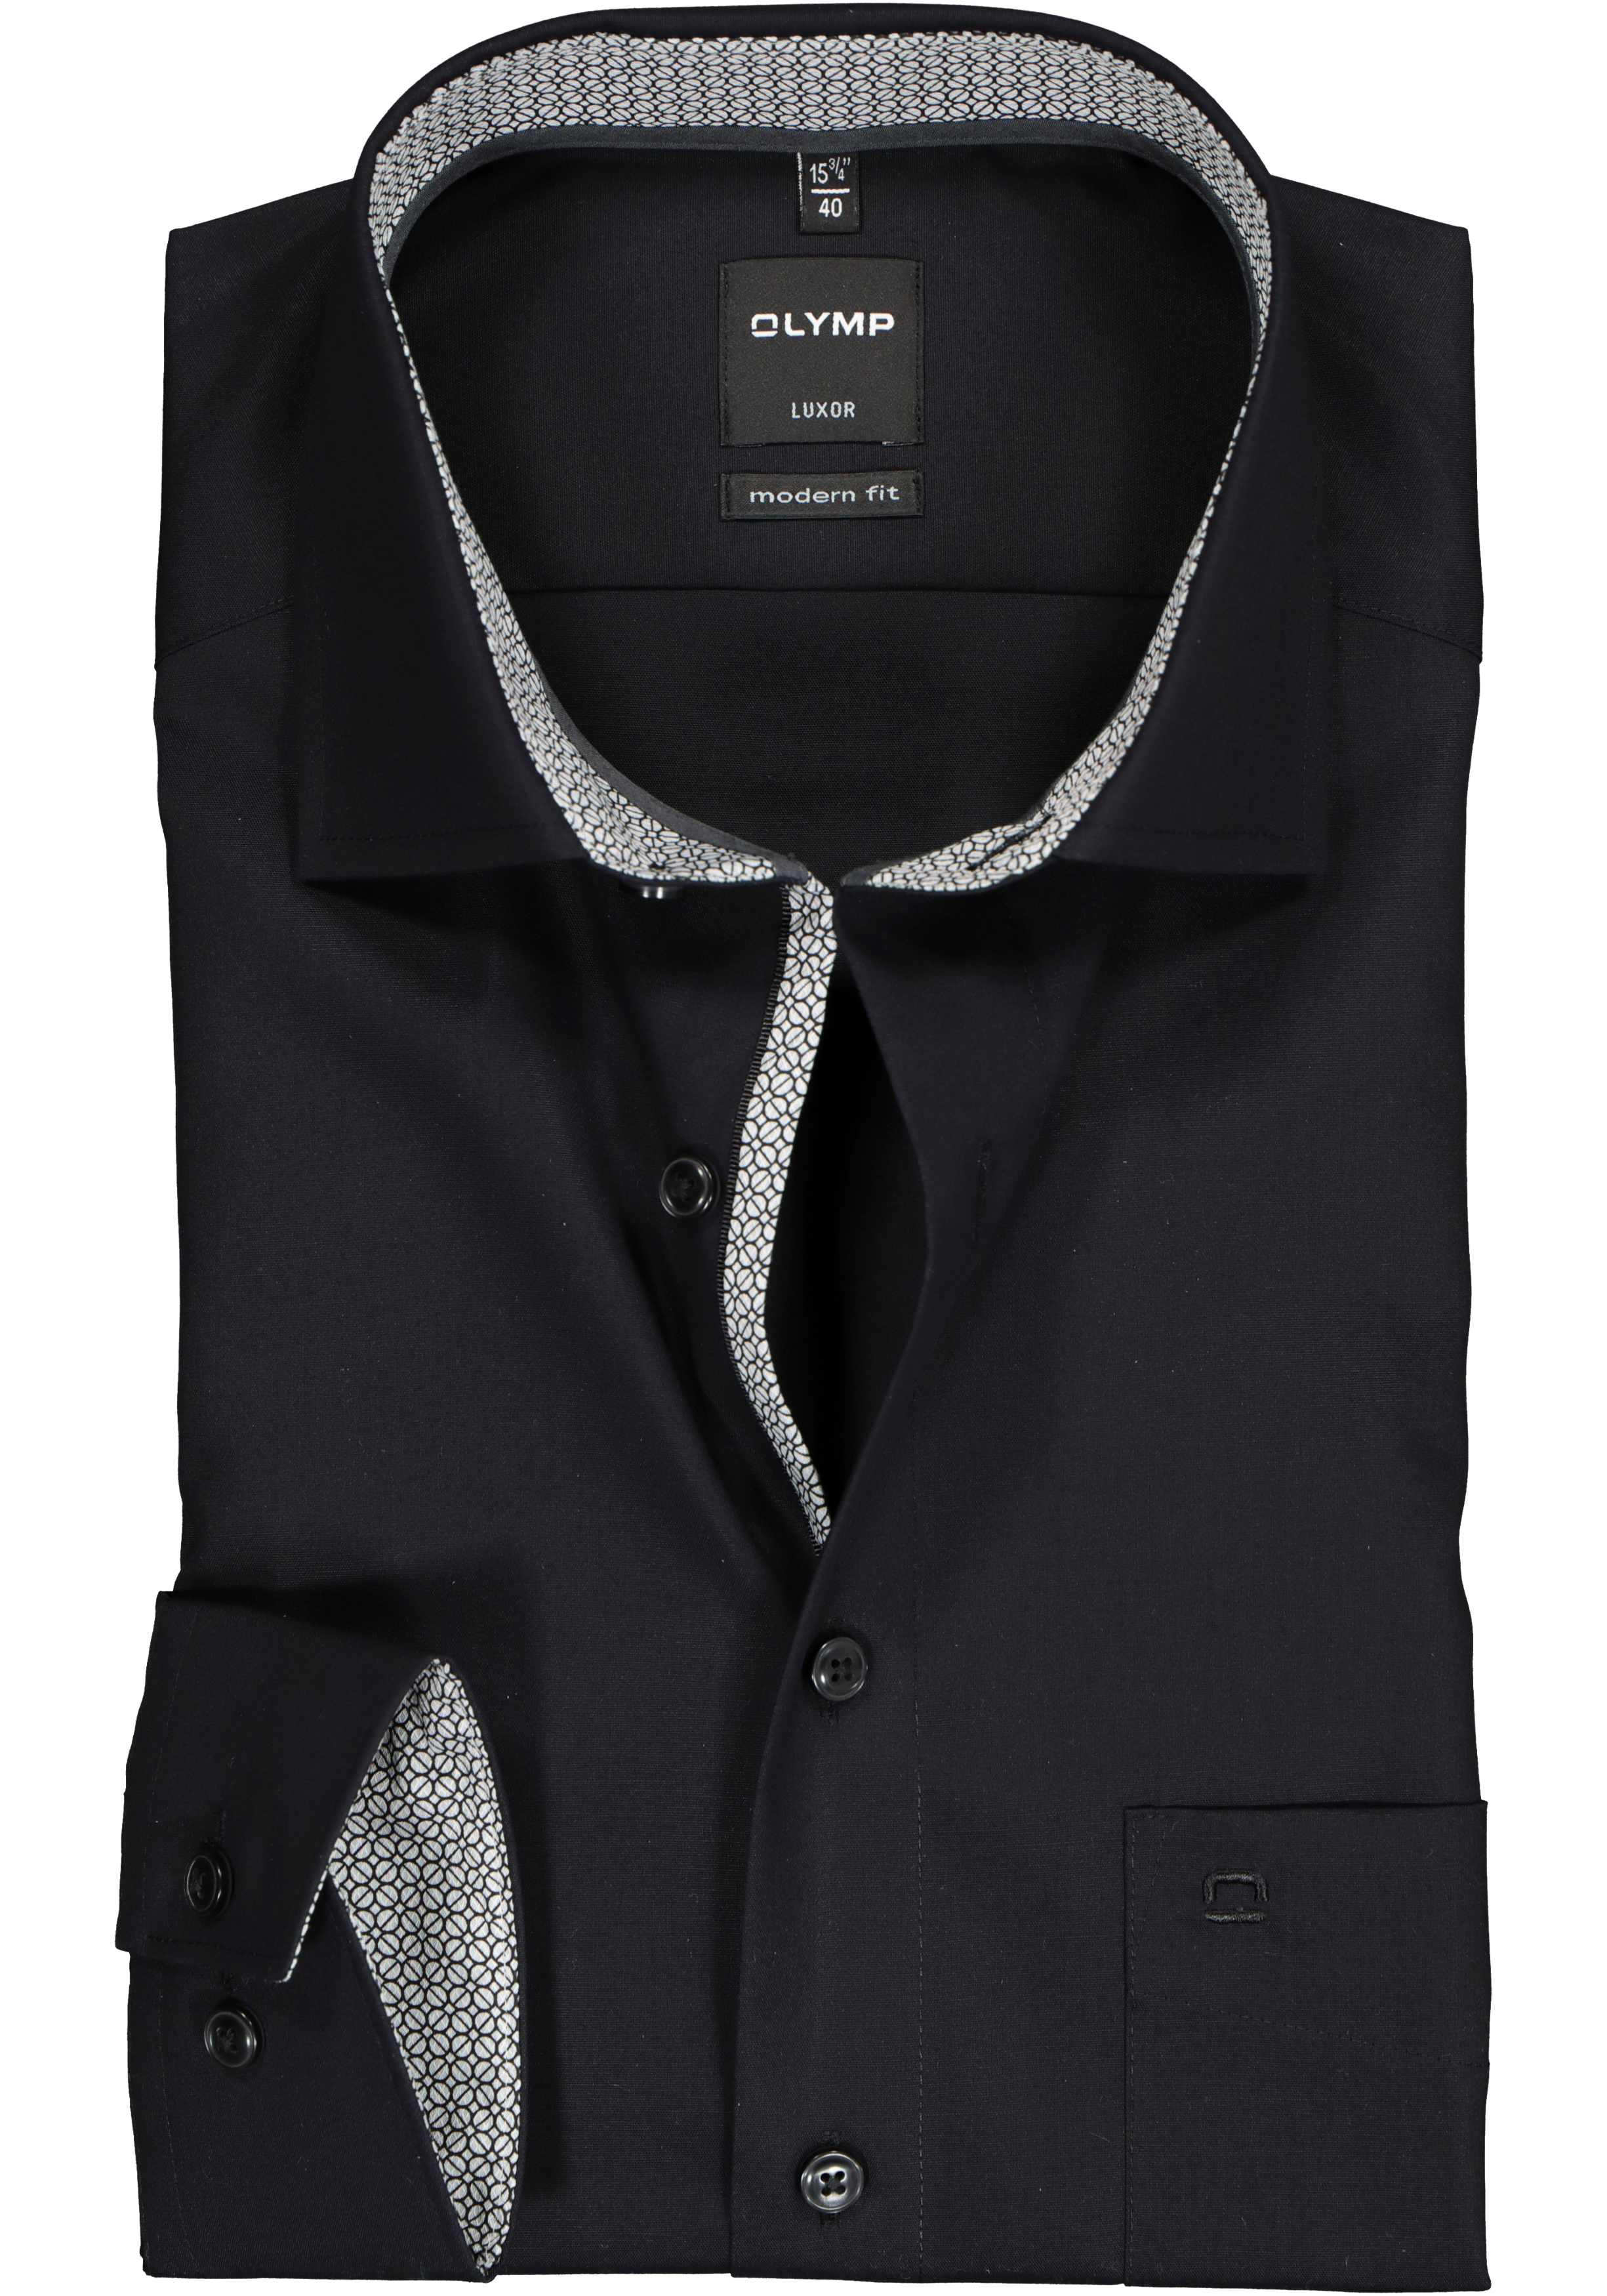 OLYMP Luxor modern fit overhemd, mouwlengte 7, zwart (contrast)